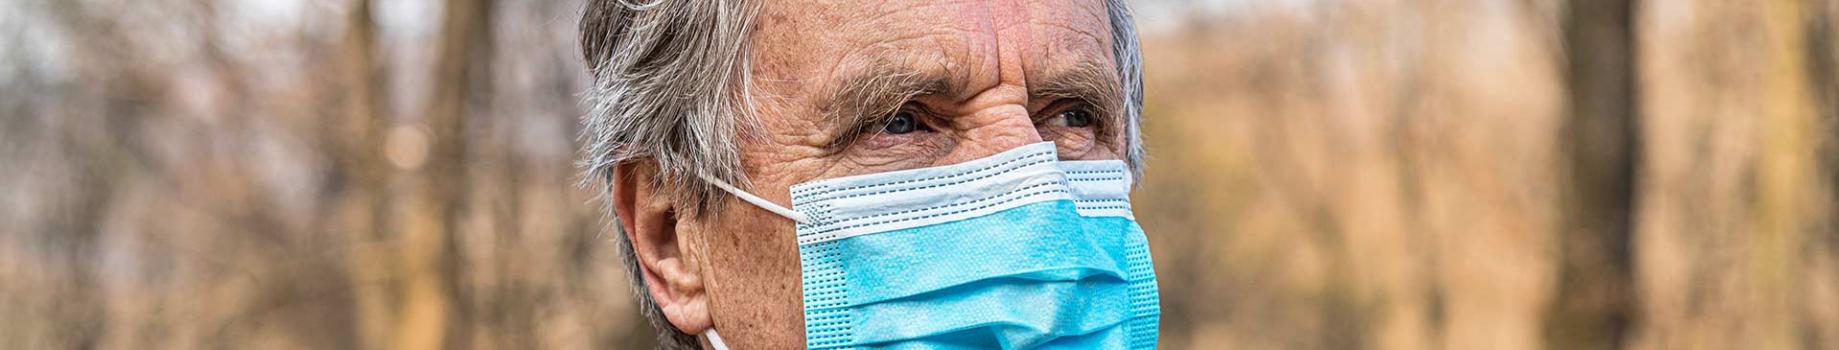 Retraités ou futurs retraités : les conséquences du Coronavirus sur votre retraite